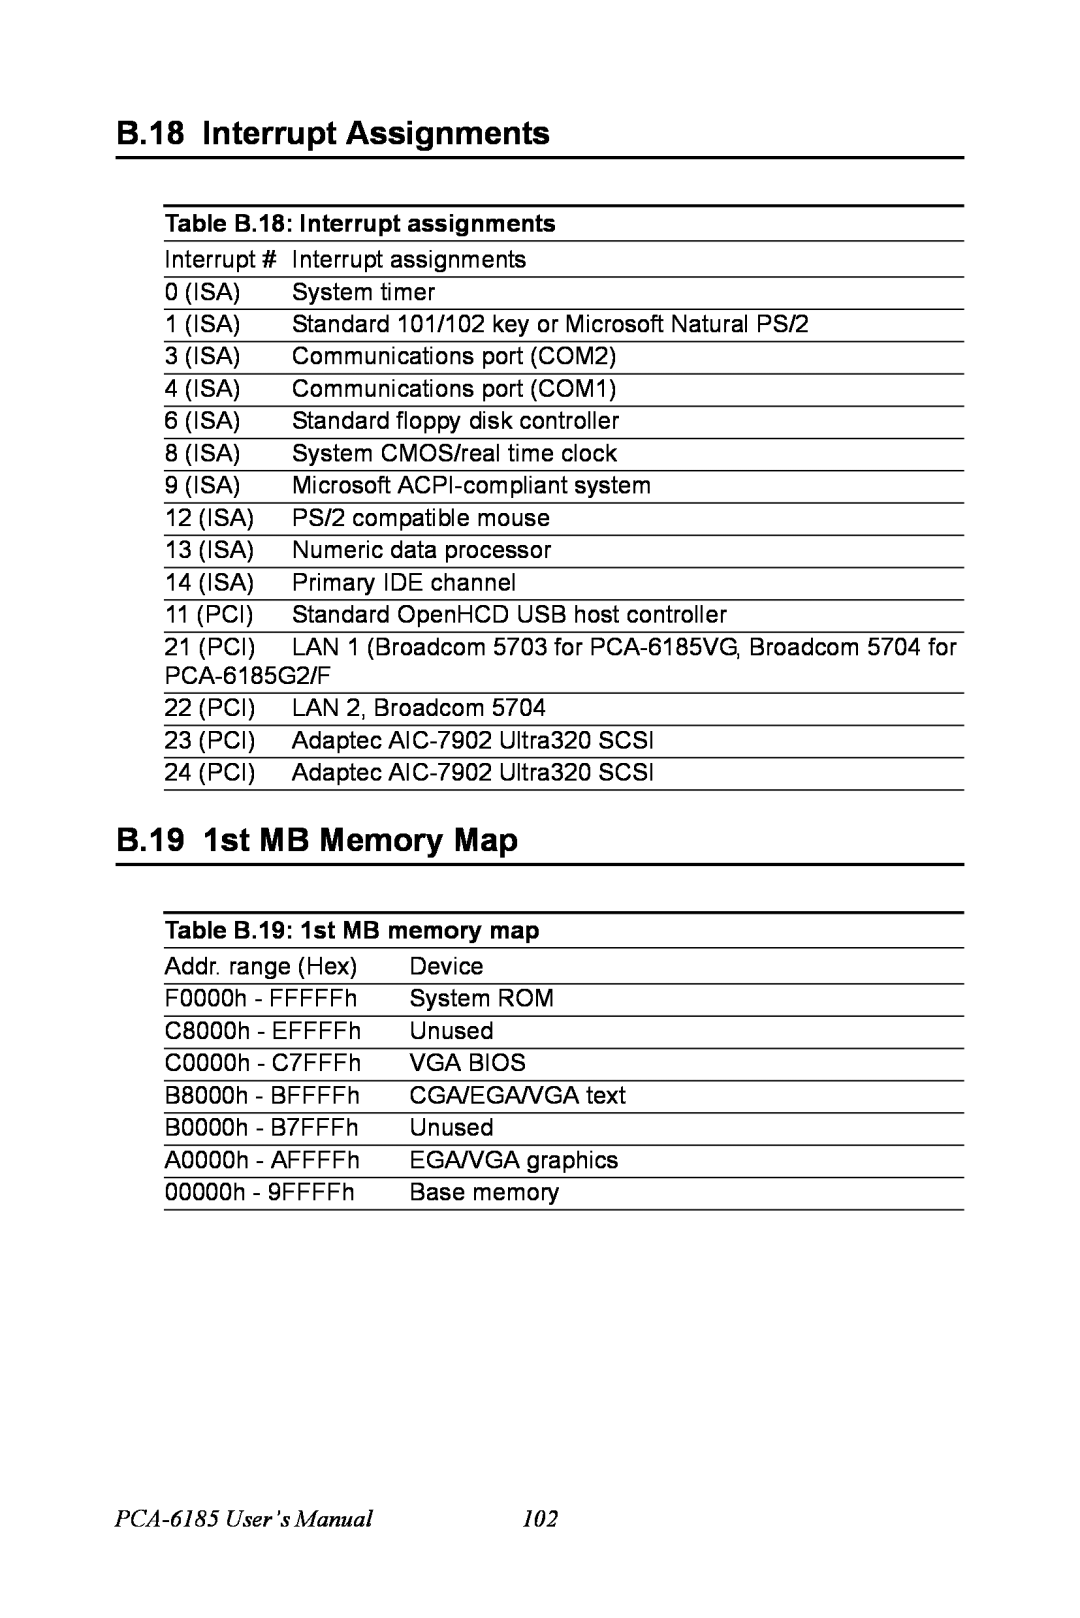 Advantech PCA-6185 user manual B.18 Interrupt Assignments, B.19 1st MB Memory Map, Table B.18 Interrupt assignments 